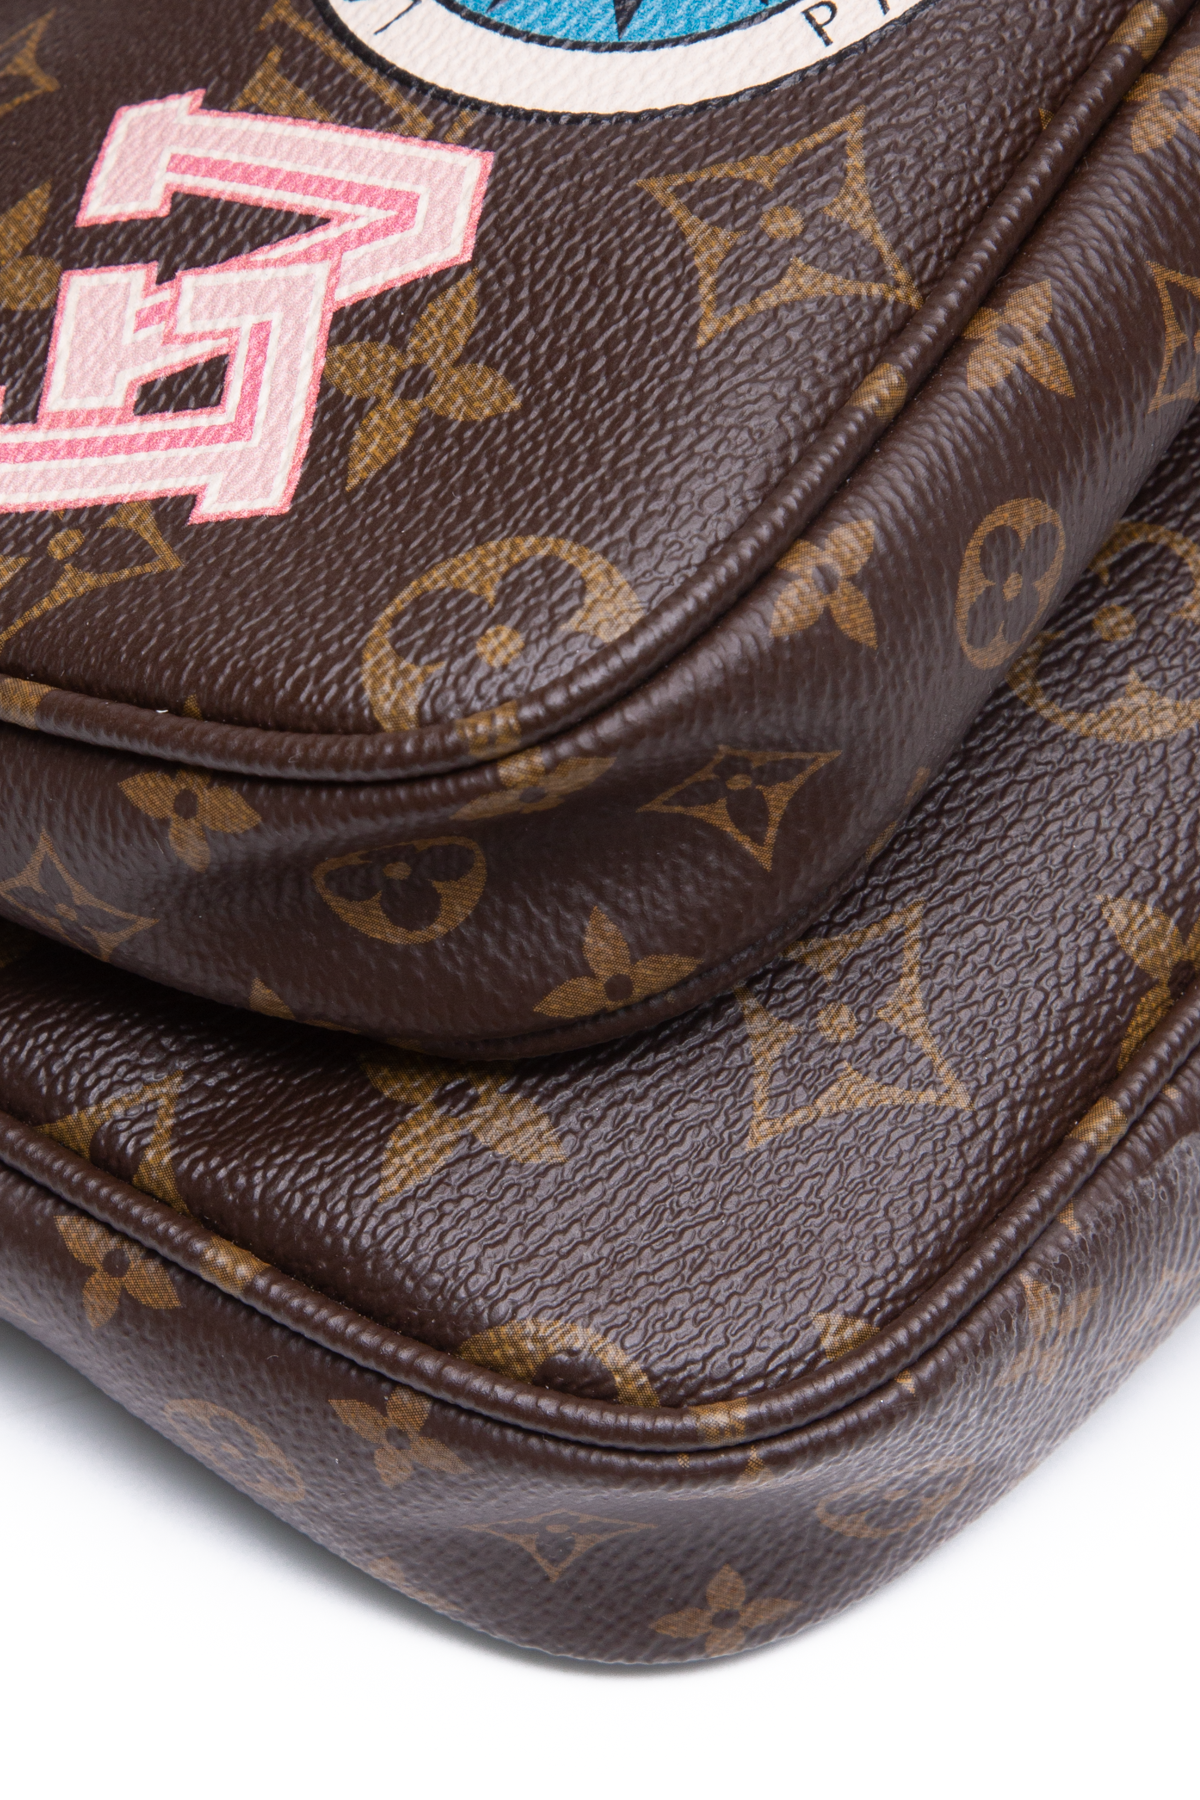 Louis Vuitton My LV World Tour Multi Pochette Accessoires Bag - Couture USA